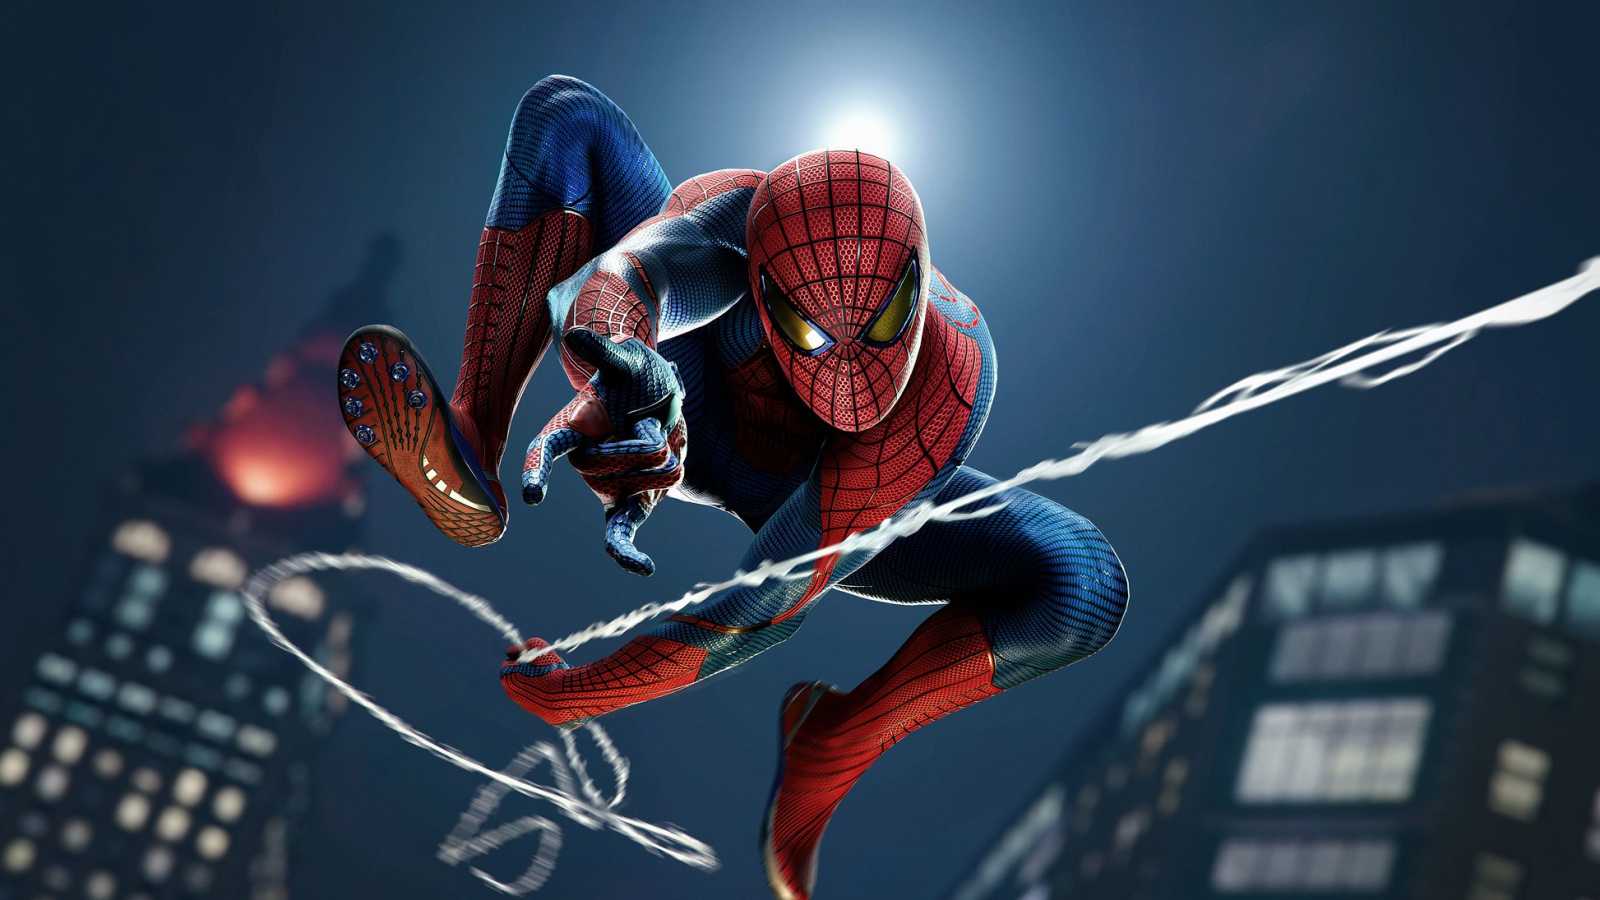 Marvel’s Spider-Man Remastered bude na konzolích PlayStation 5 brzy k dispozici jako samostatná hra